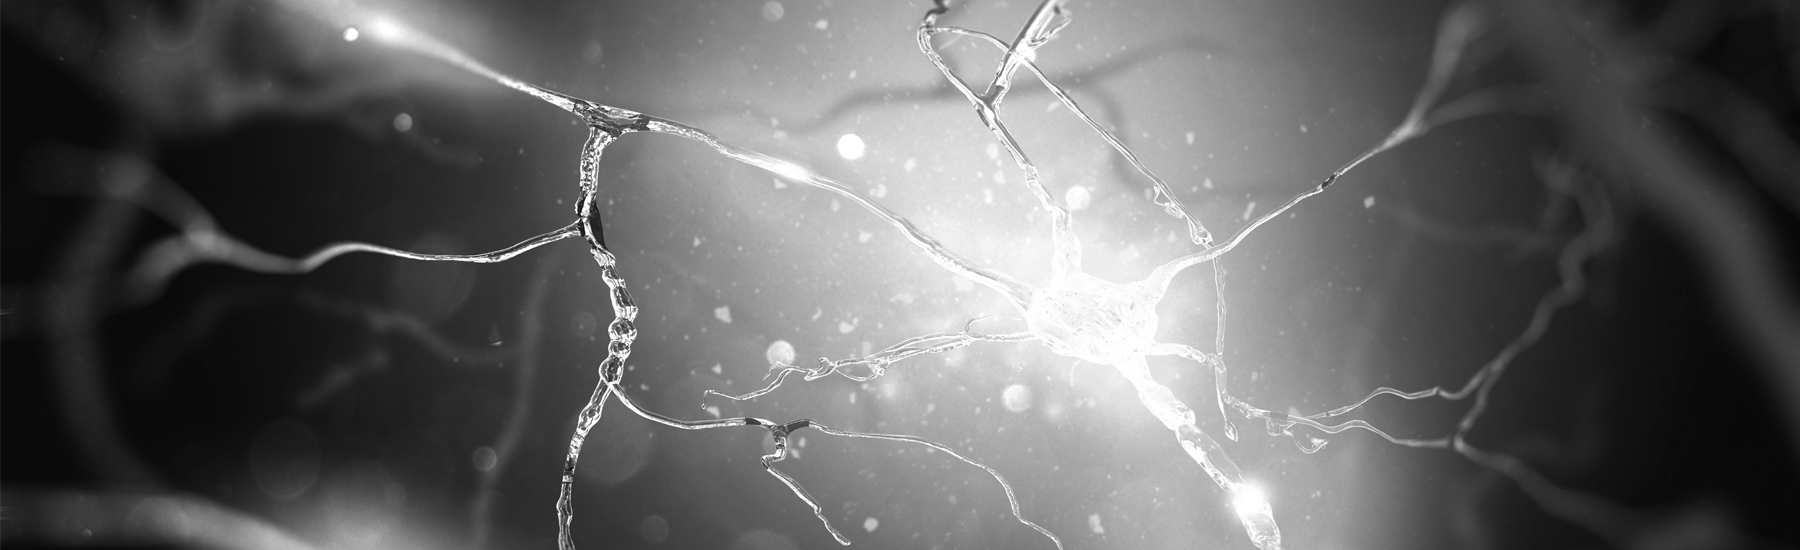 Bild Bobath meets Manuelle - Biomechanische und neuromuskuläre Aspekte der UNTEREN EXTREMITÄT, in der Behandlung neurologischer Patienten